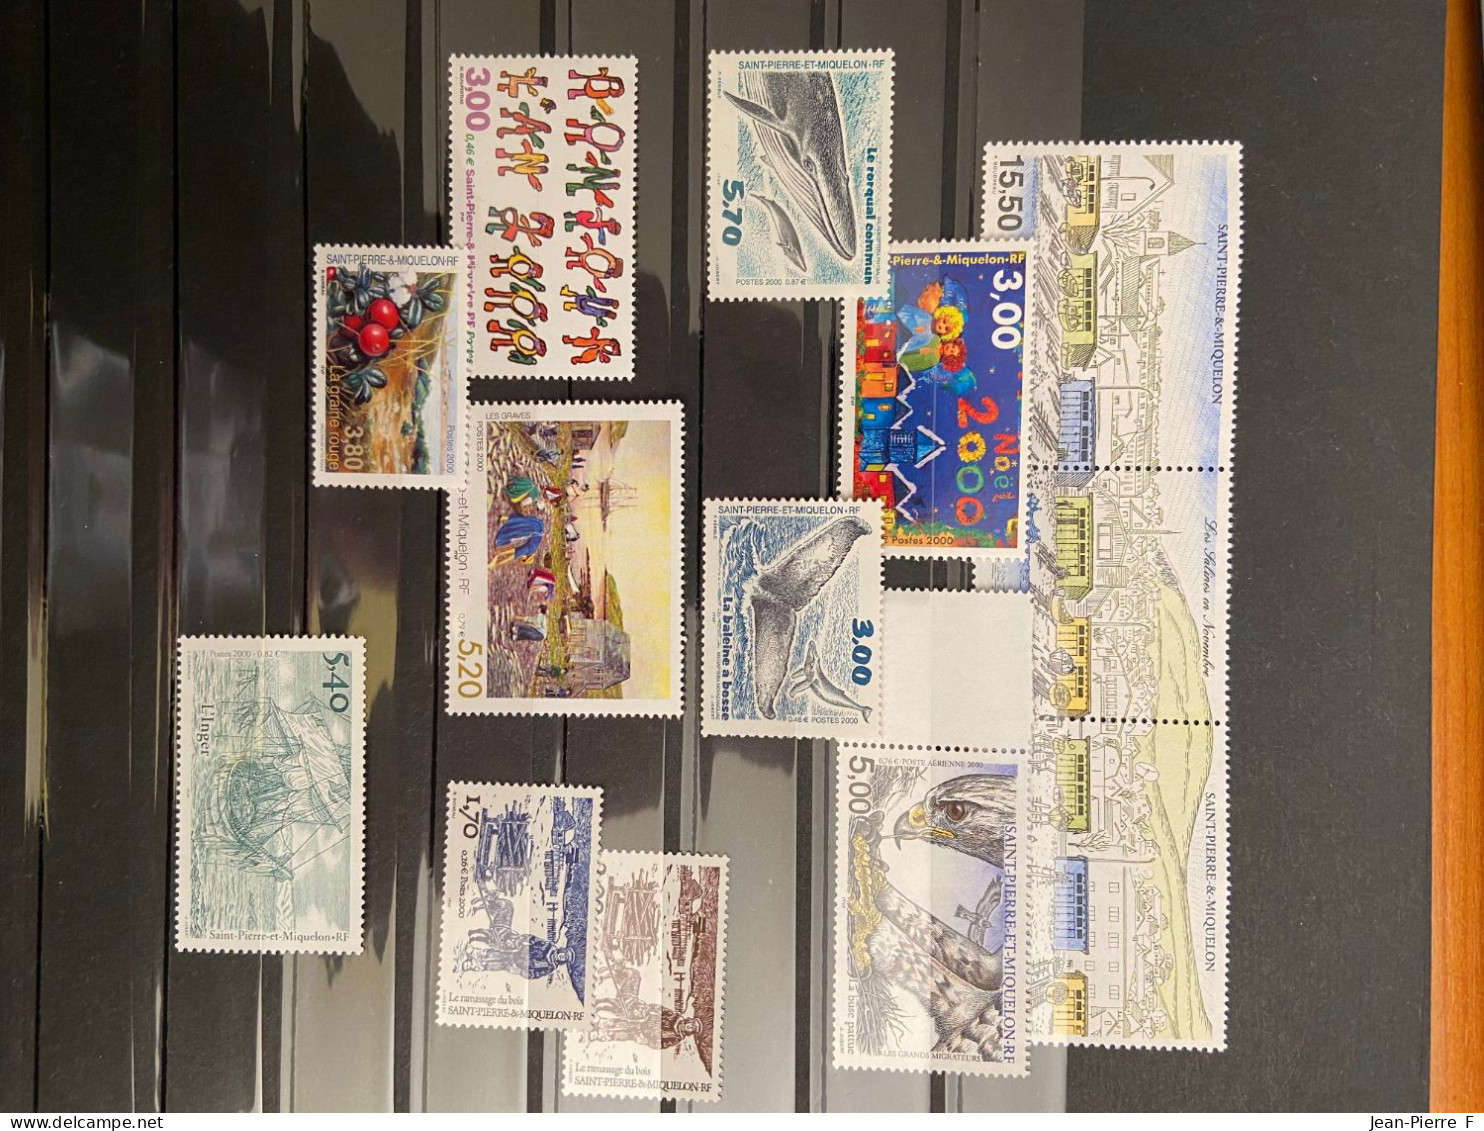 Lot de 500 timbres neufs de Saint Pierre et Miquelon – 1986 à 2003 incluse